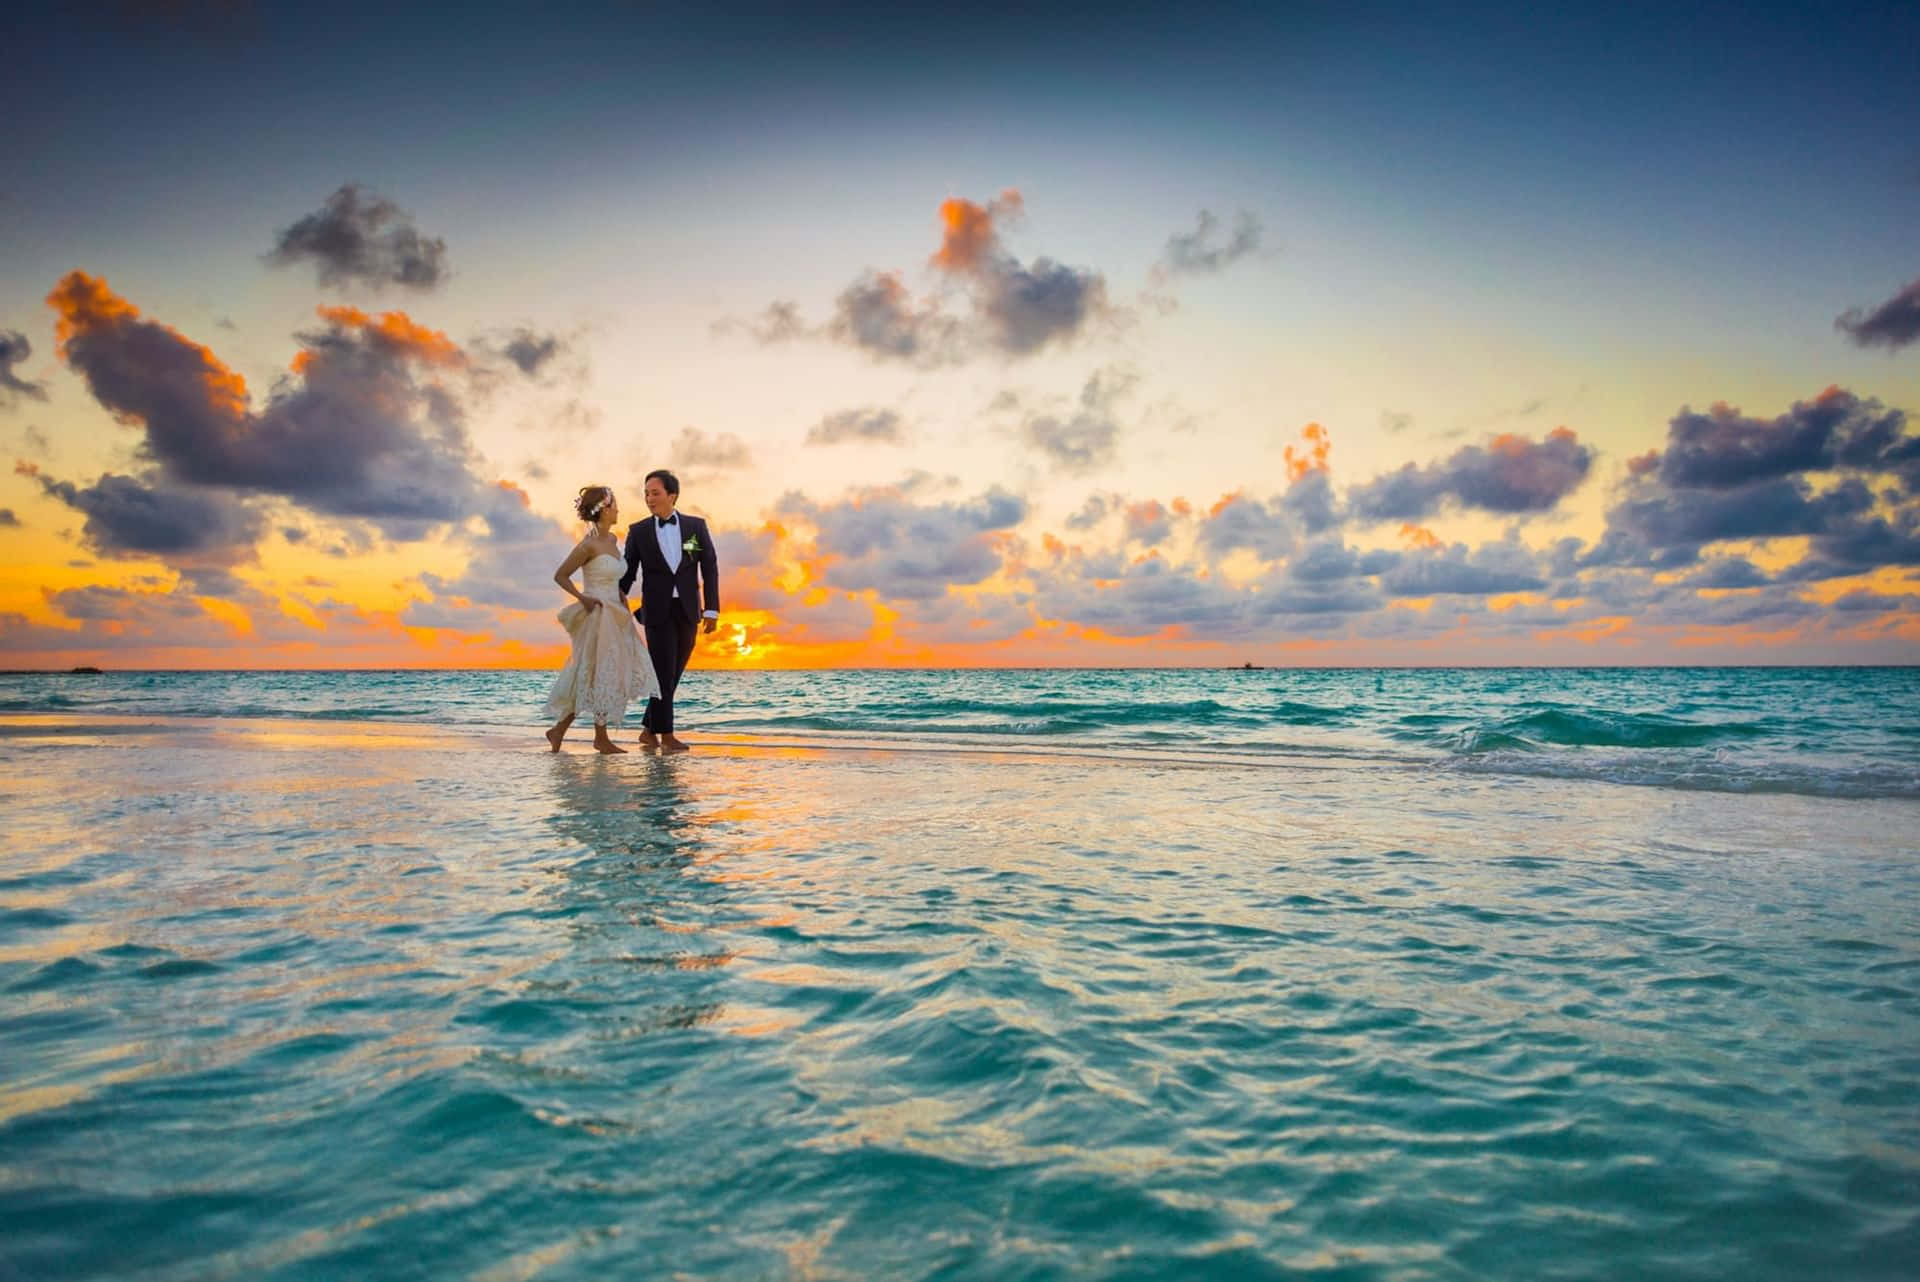 Caption: A Romantic Sunset Beach Wedding Wallpaper